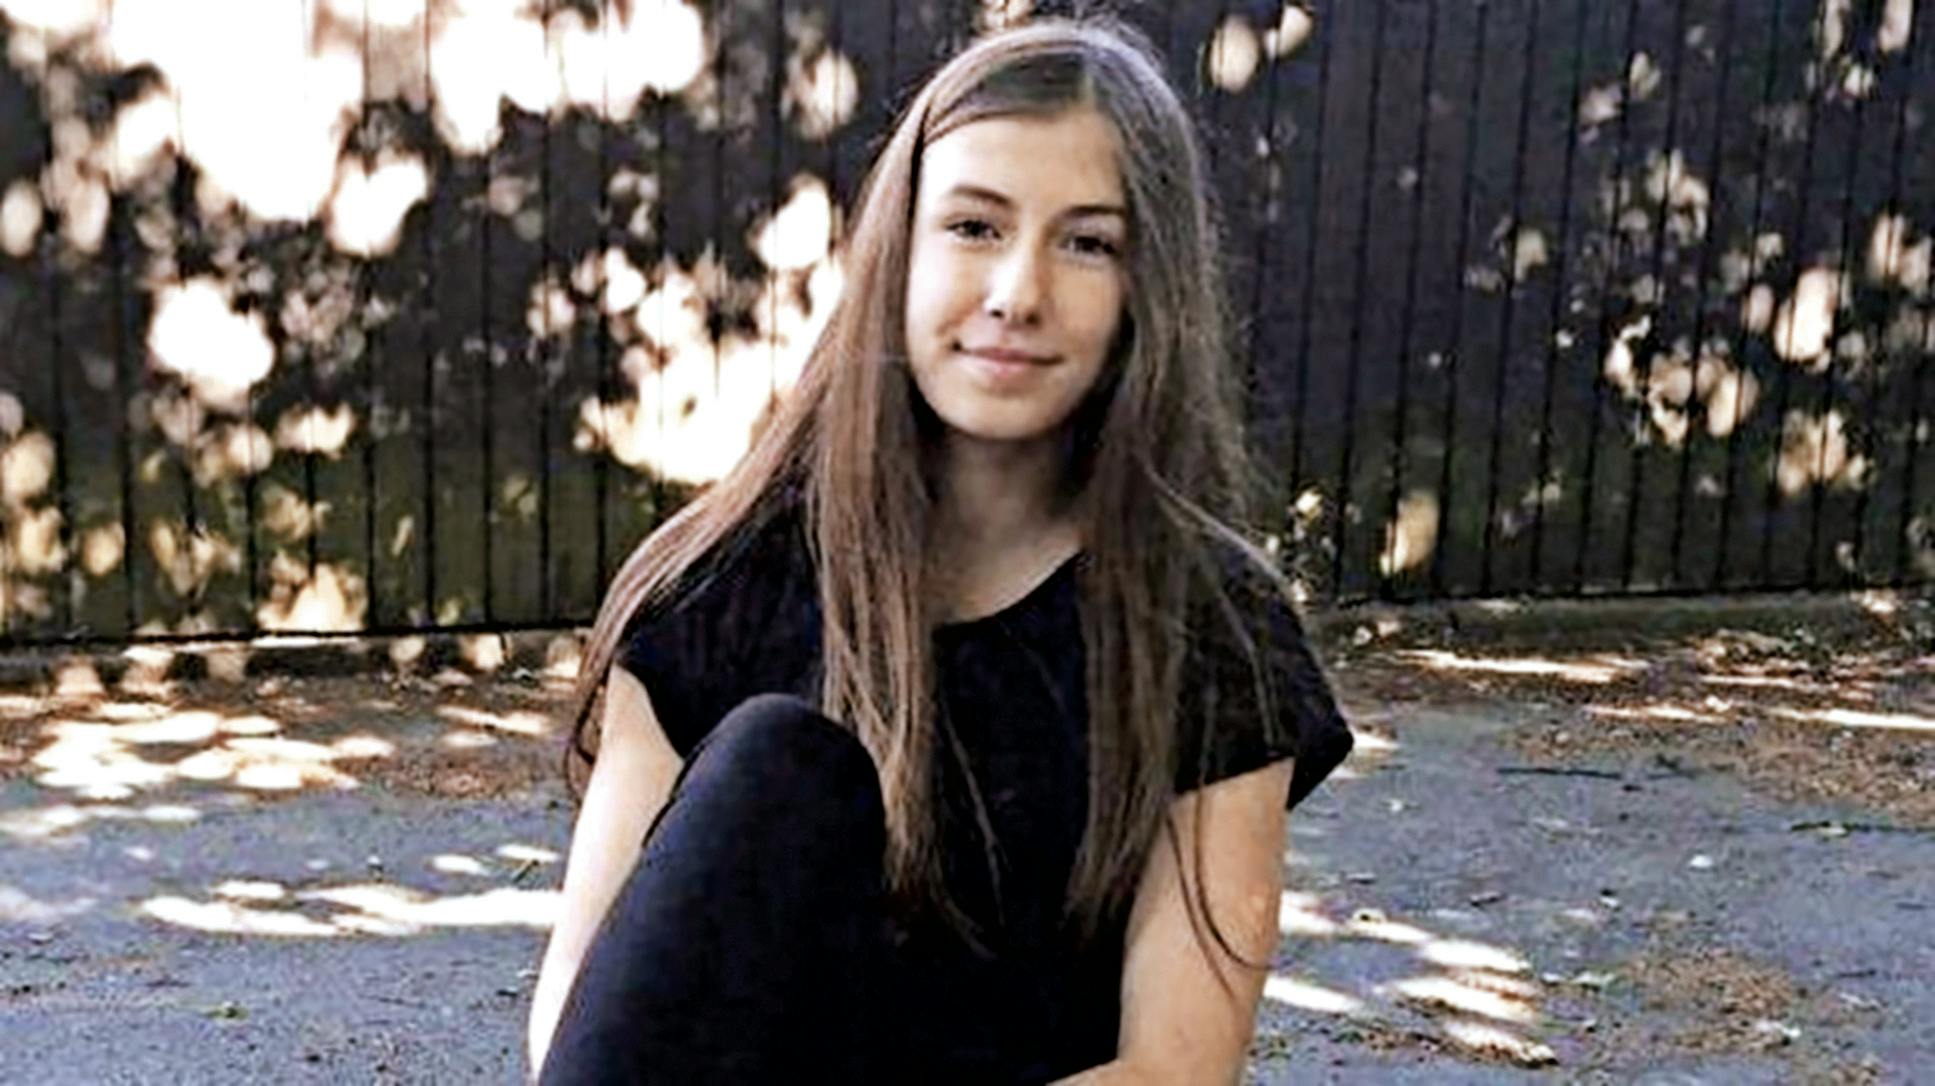 Emilie Meng forsvandt i juli 2016 i Korsør. Nu vil politiet efter den sigtede i sagen om 13-årige pige.